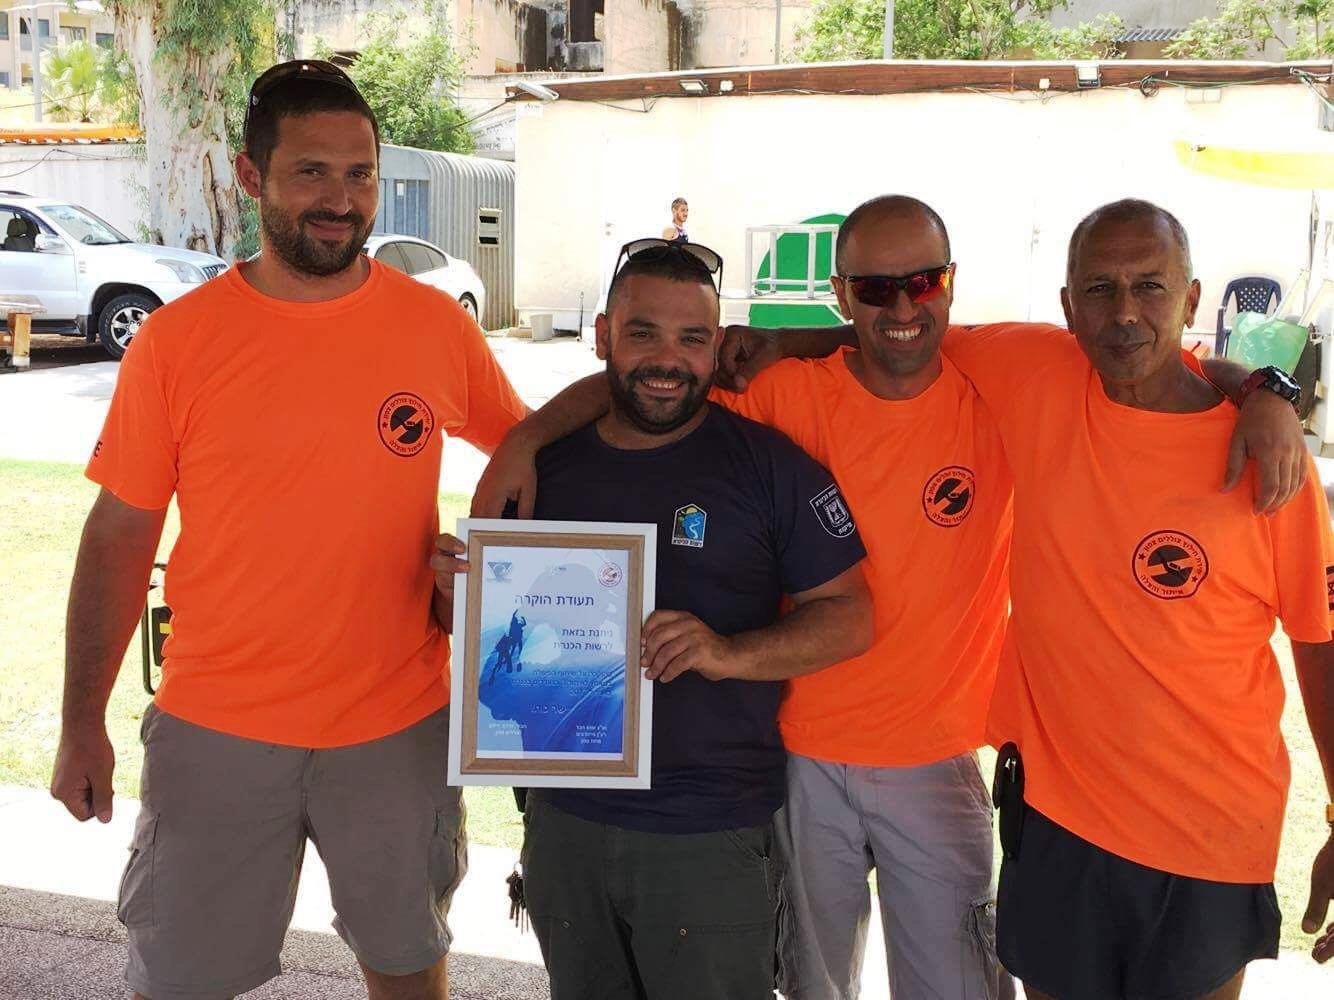 תעודת הוקרה הוענקה לרשות הכינרת מיחידת הצוללנים של משטרת ישראל